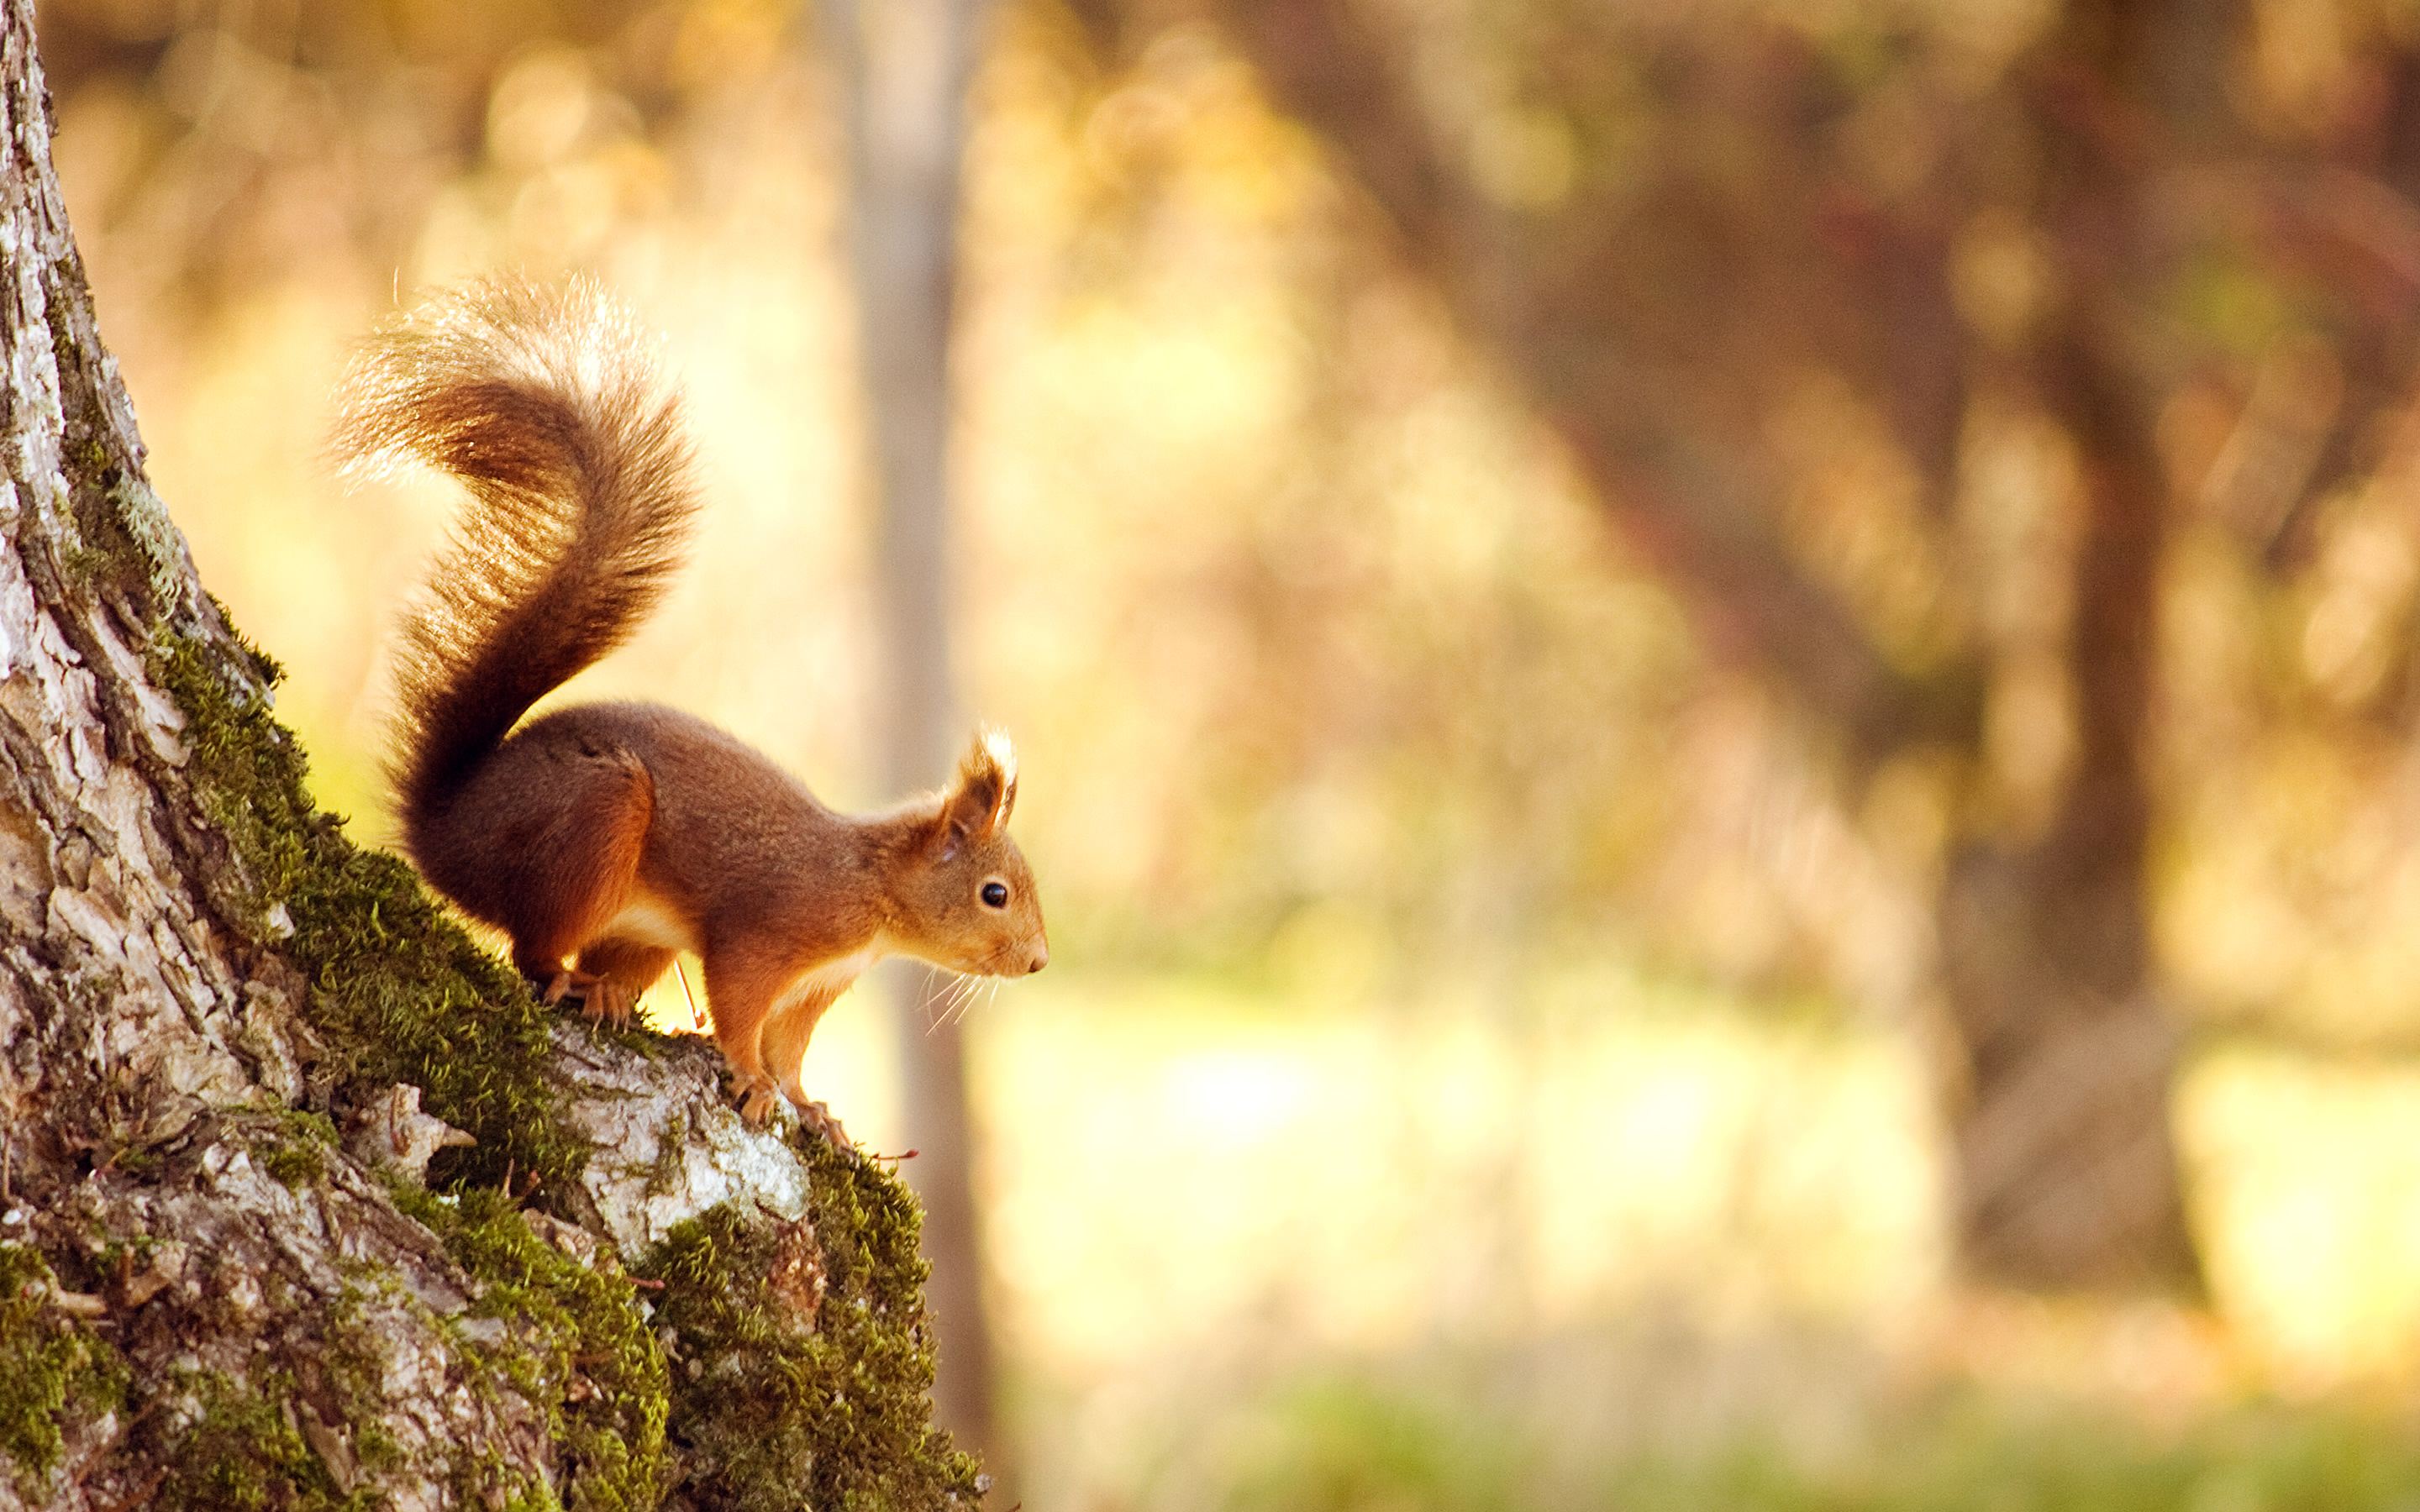 Animals. Autumn animals, Cute squirrel, Spring animals